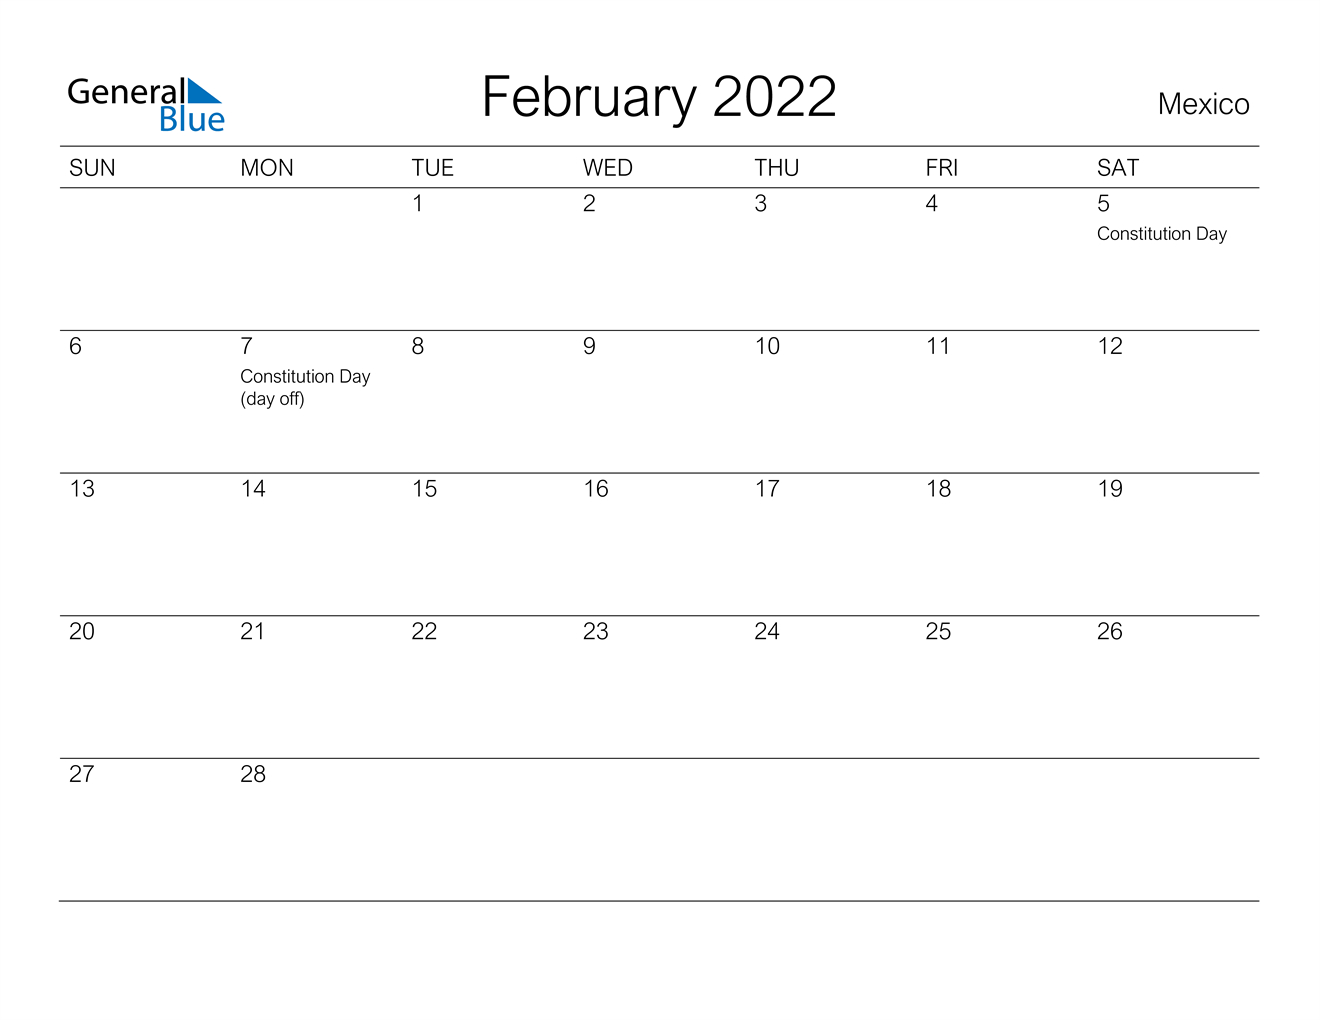 February 2022 Calendar - Mexico